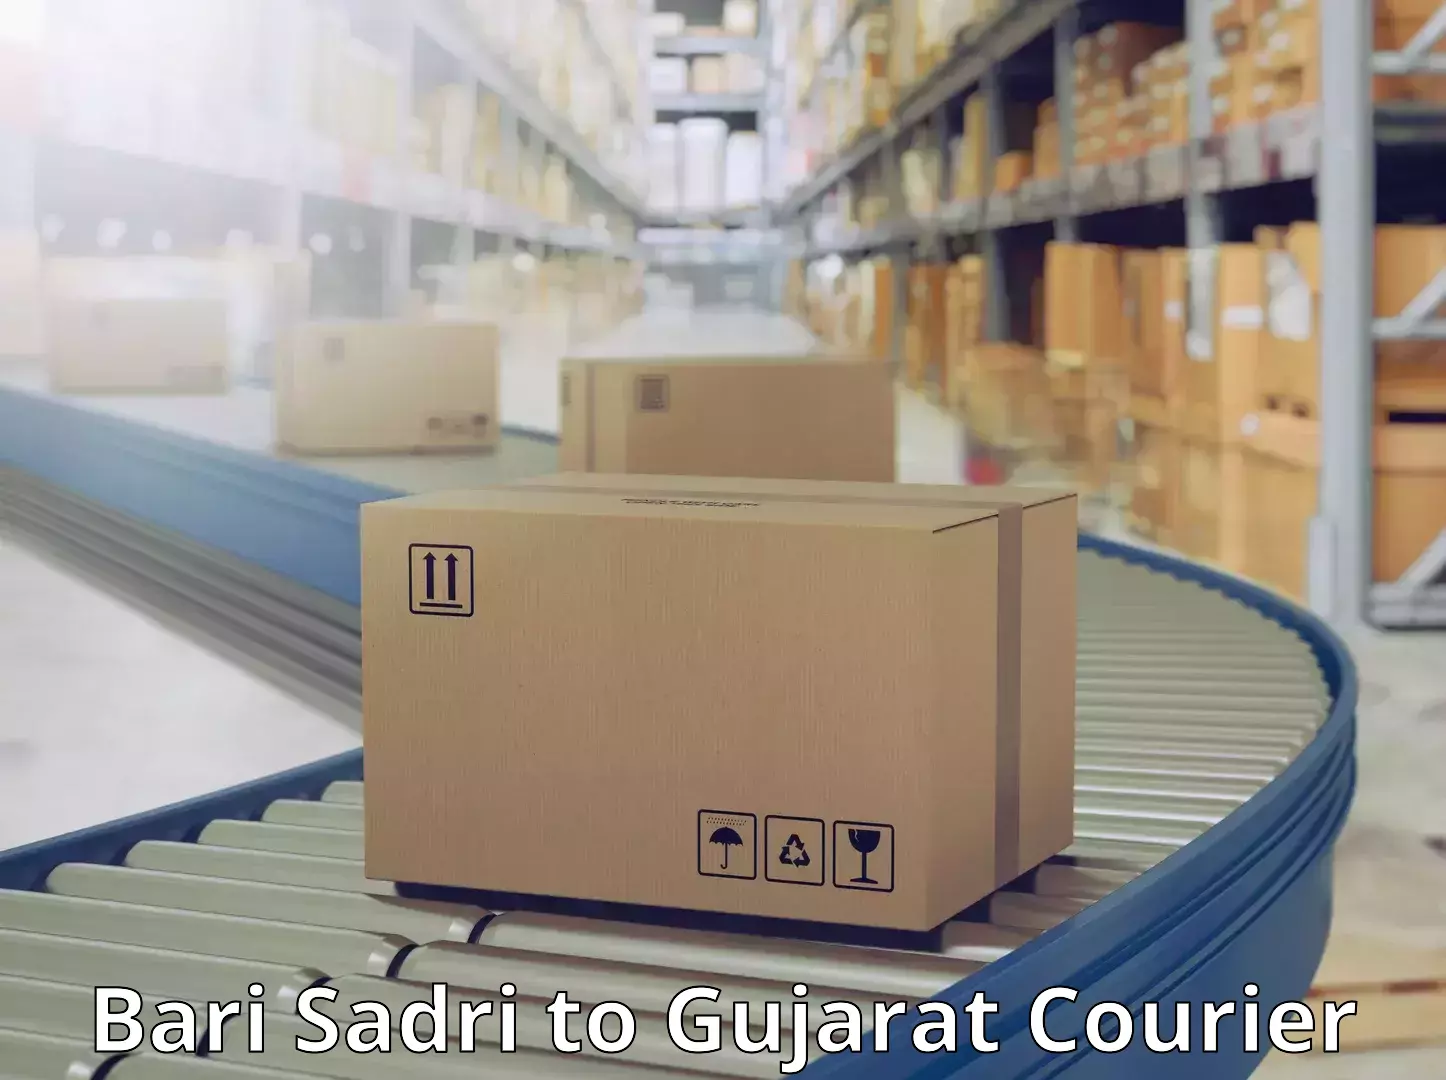 Cargo courier service Bari Sadri to Rajkot